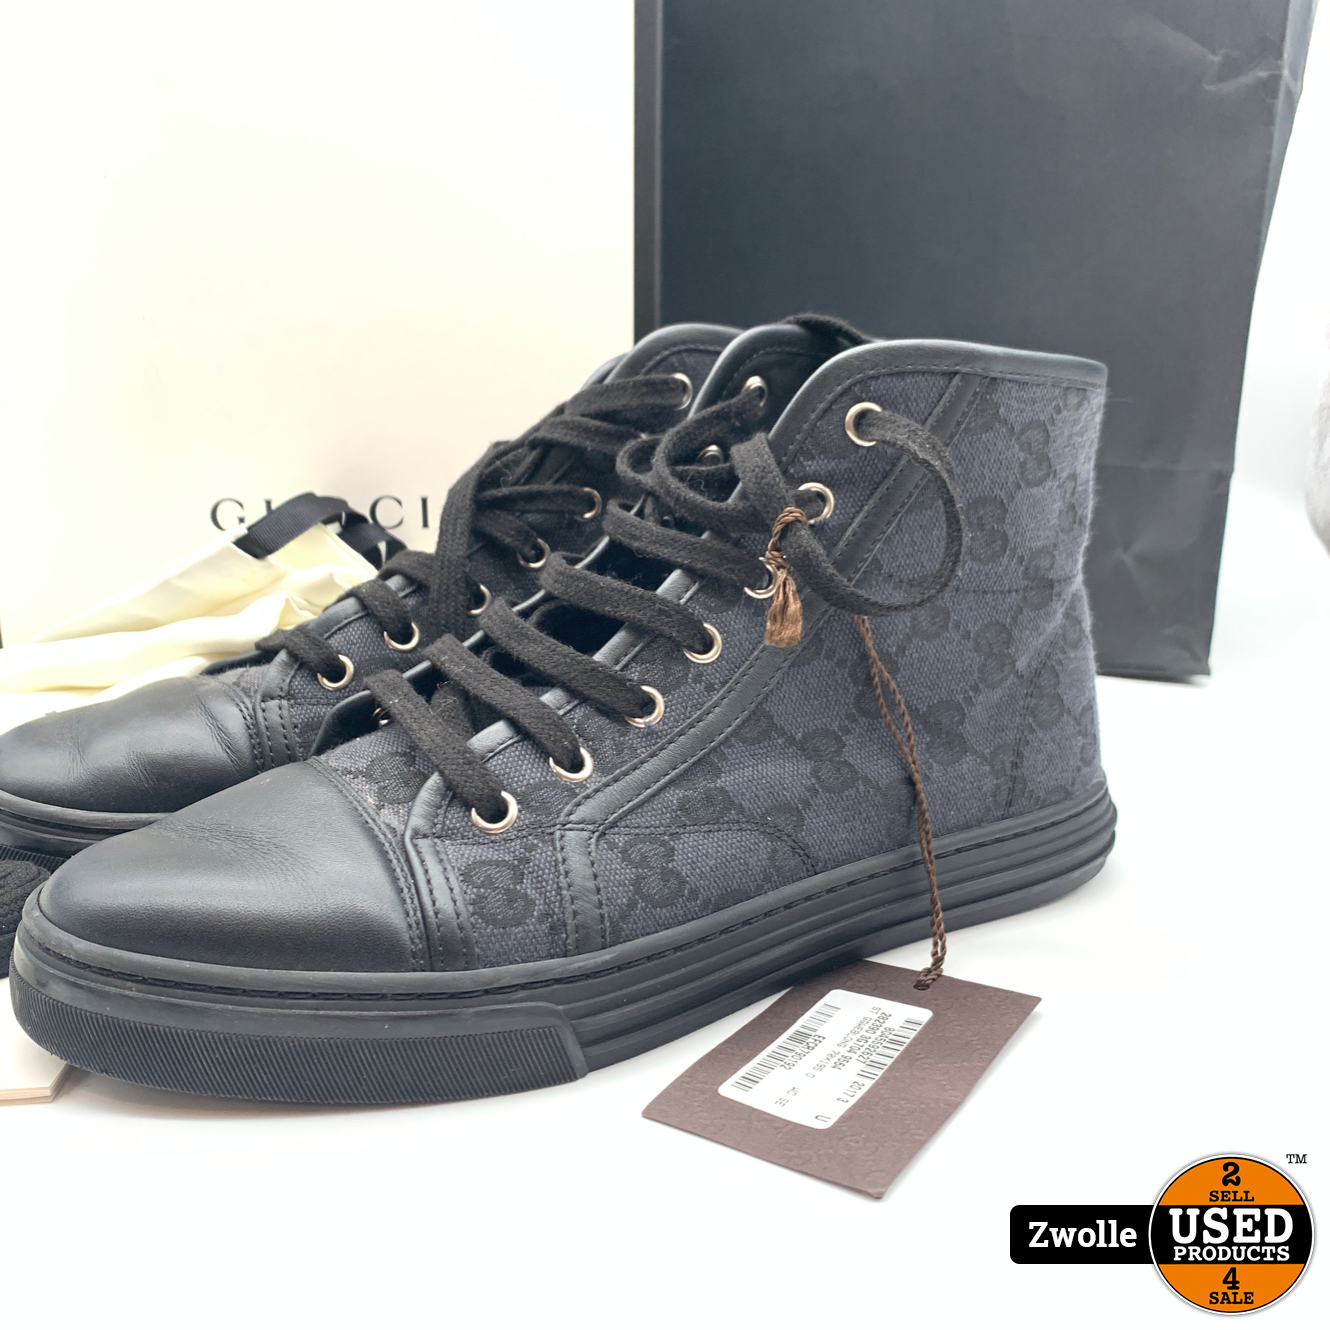 Tientallen Schouderophalend Verplaatsbaar Gucci schoenen compleet in doos maat 38 - Used Products Zwolle